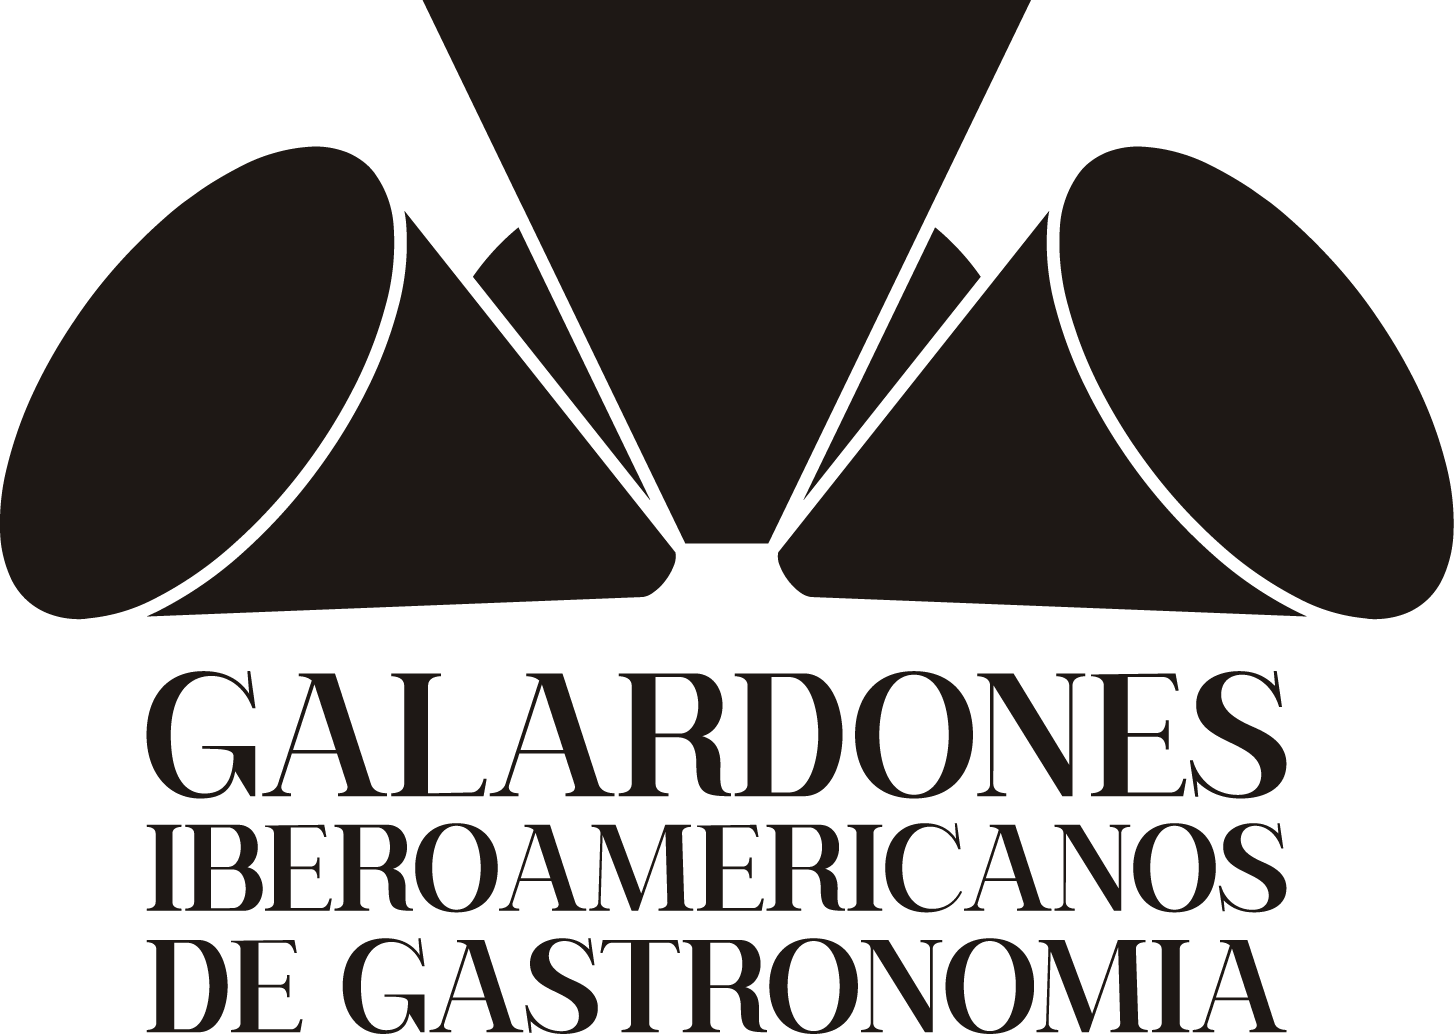 Galardones Iberoamericanos de Gastronomia